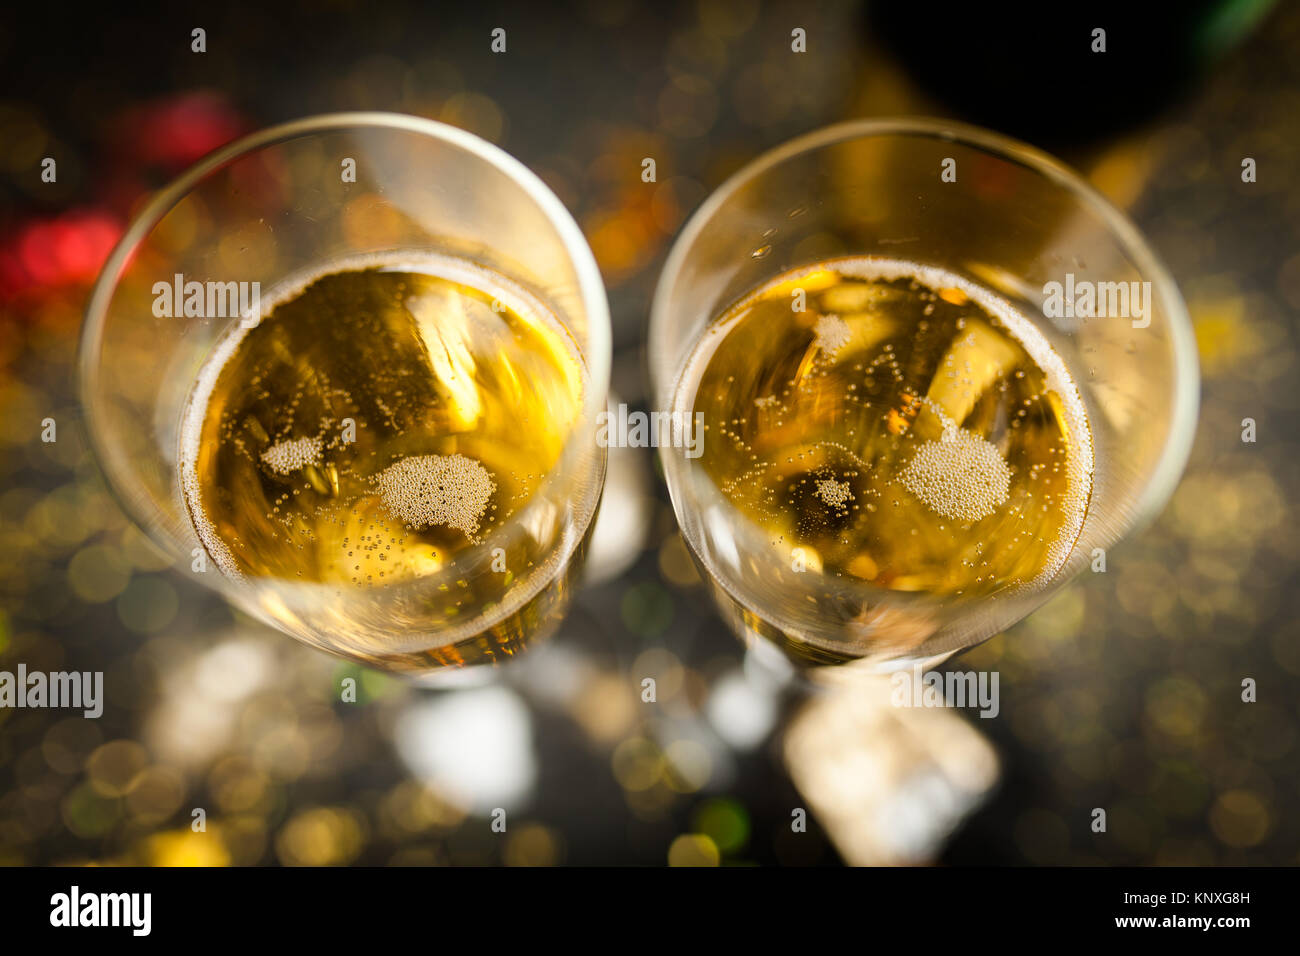 Deux verres de champagne dans la région de golden glitter, fond sombre Banque D'Images